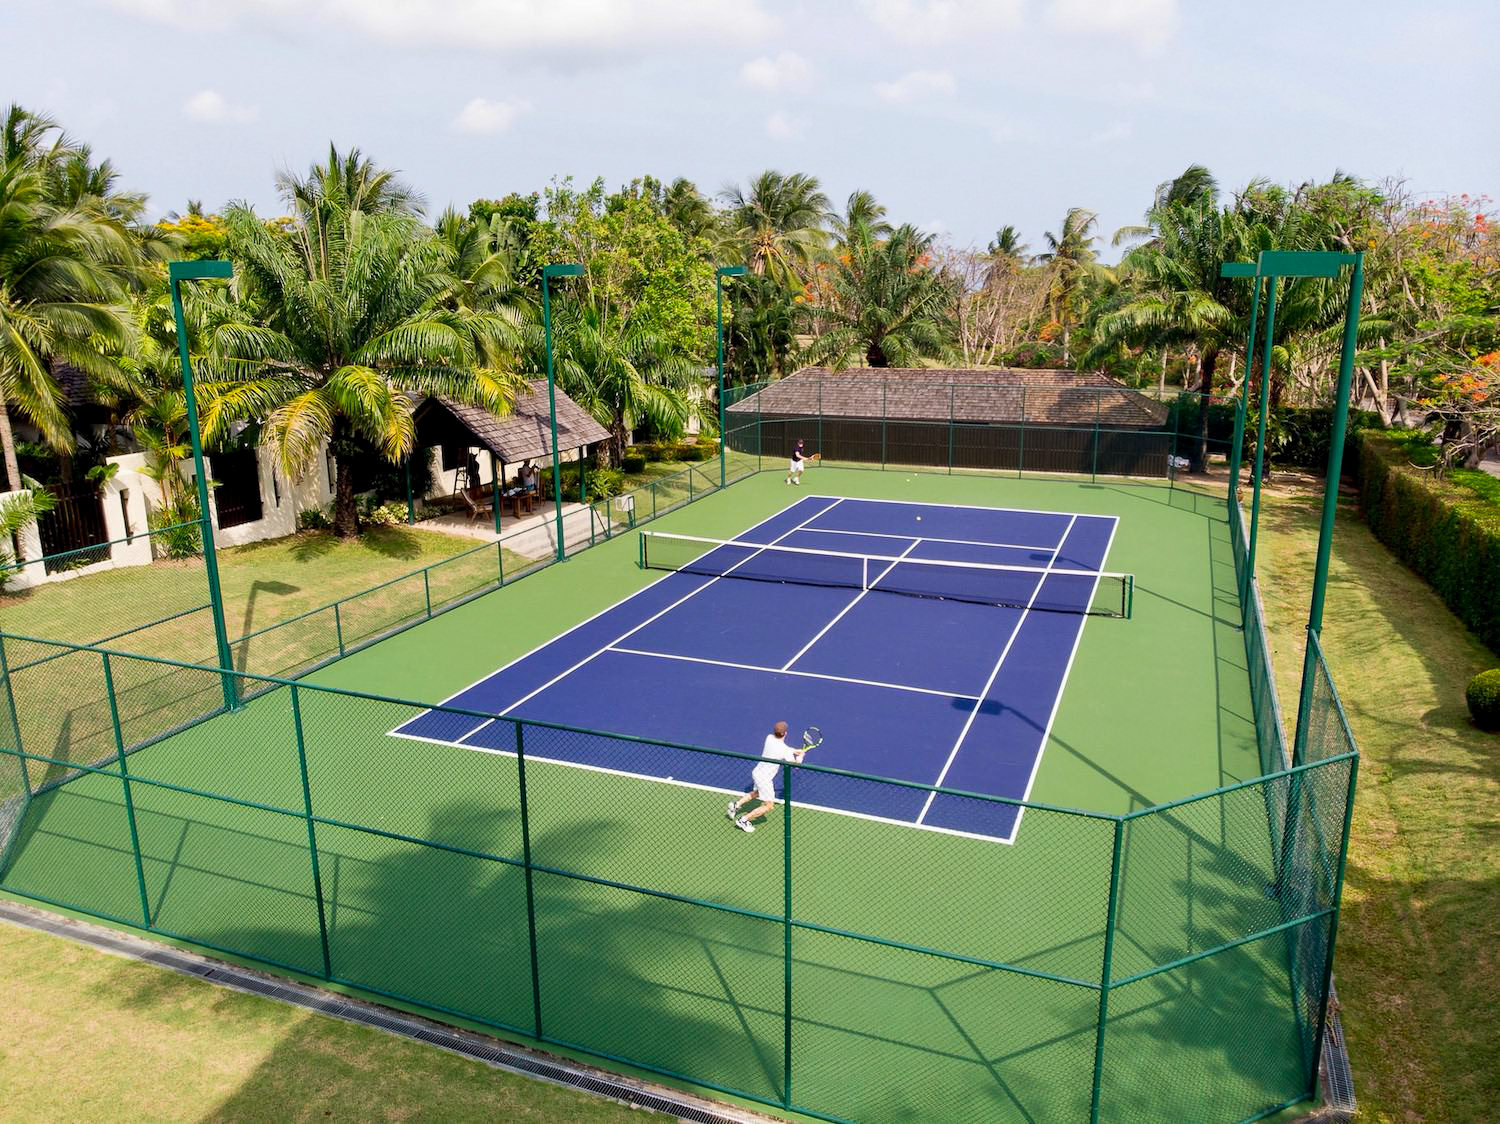 Activities2 - Tennis Court-2.jpg